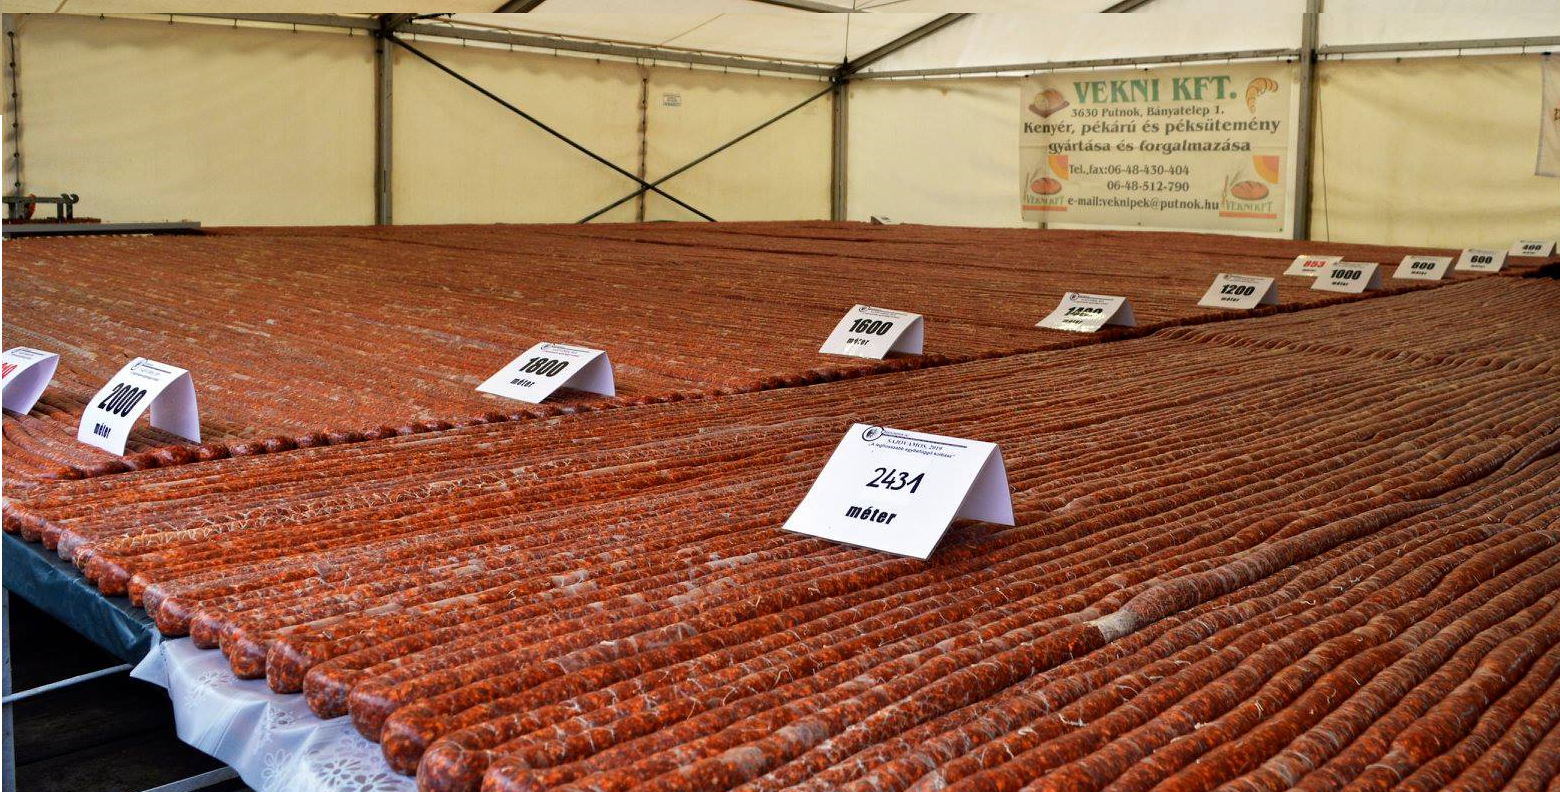 #венгрия #венгерская #деревня побила мировой рекорд, самая длинная колбаса